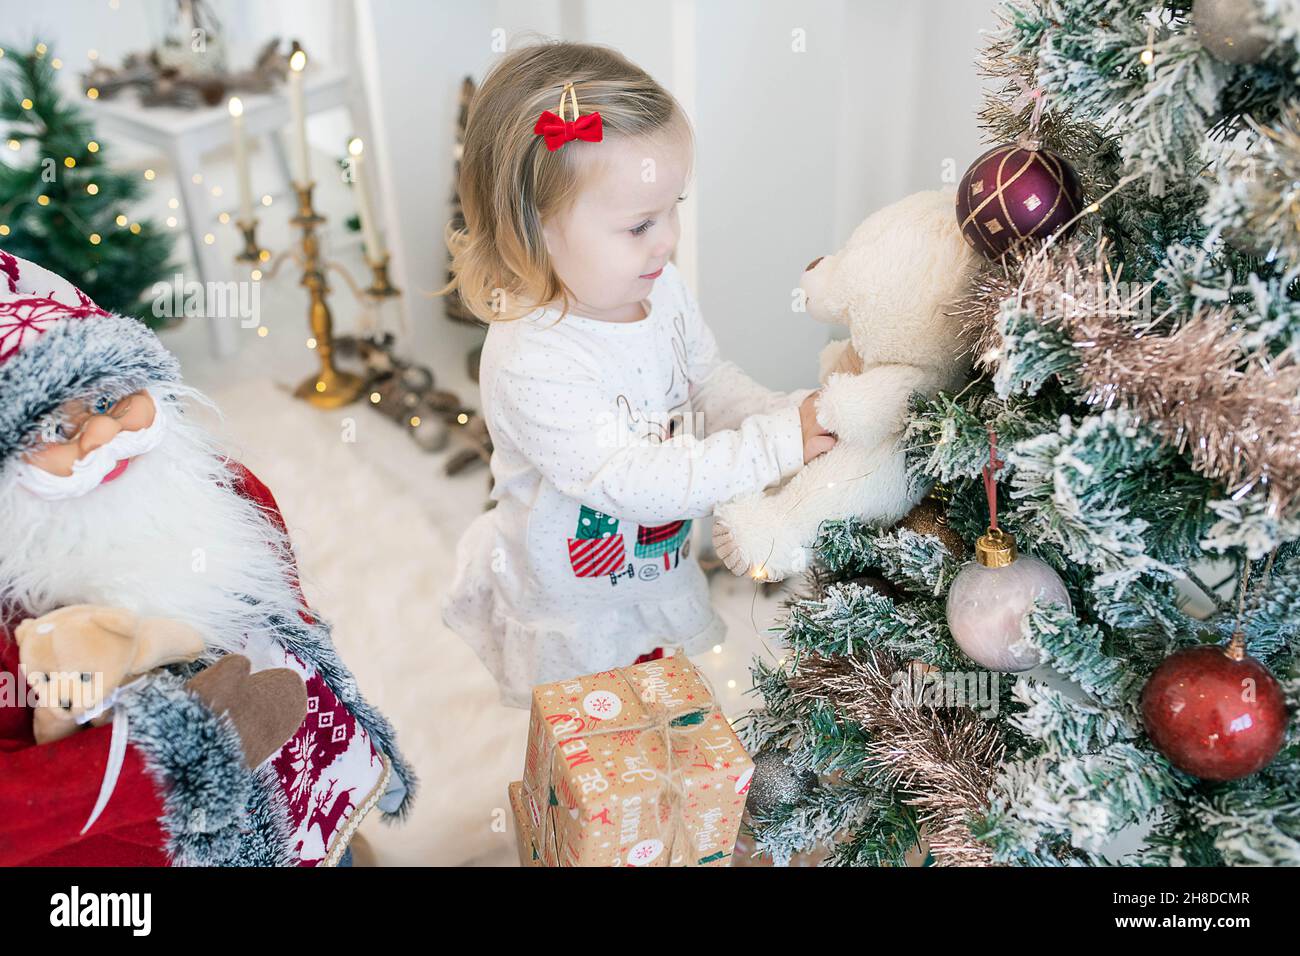 Ragazza caucasica carina indossando pigiami festosi e giocando con il suo orsacchiotto vicino ad un albero di Natale decorato con grandi globi e neve artificiale Foto Stock